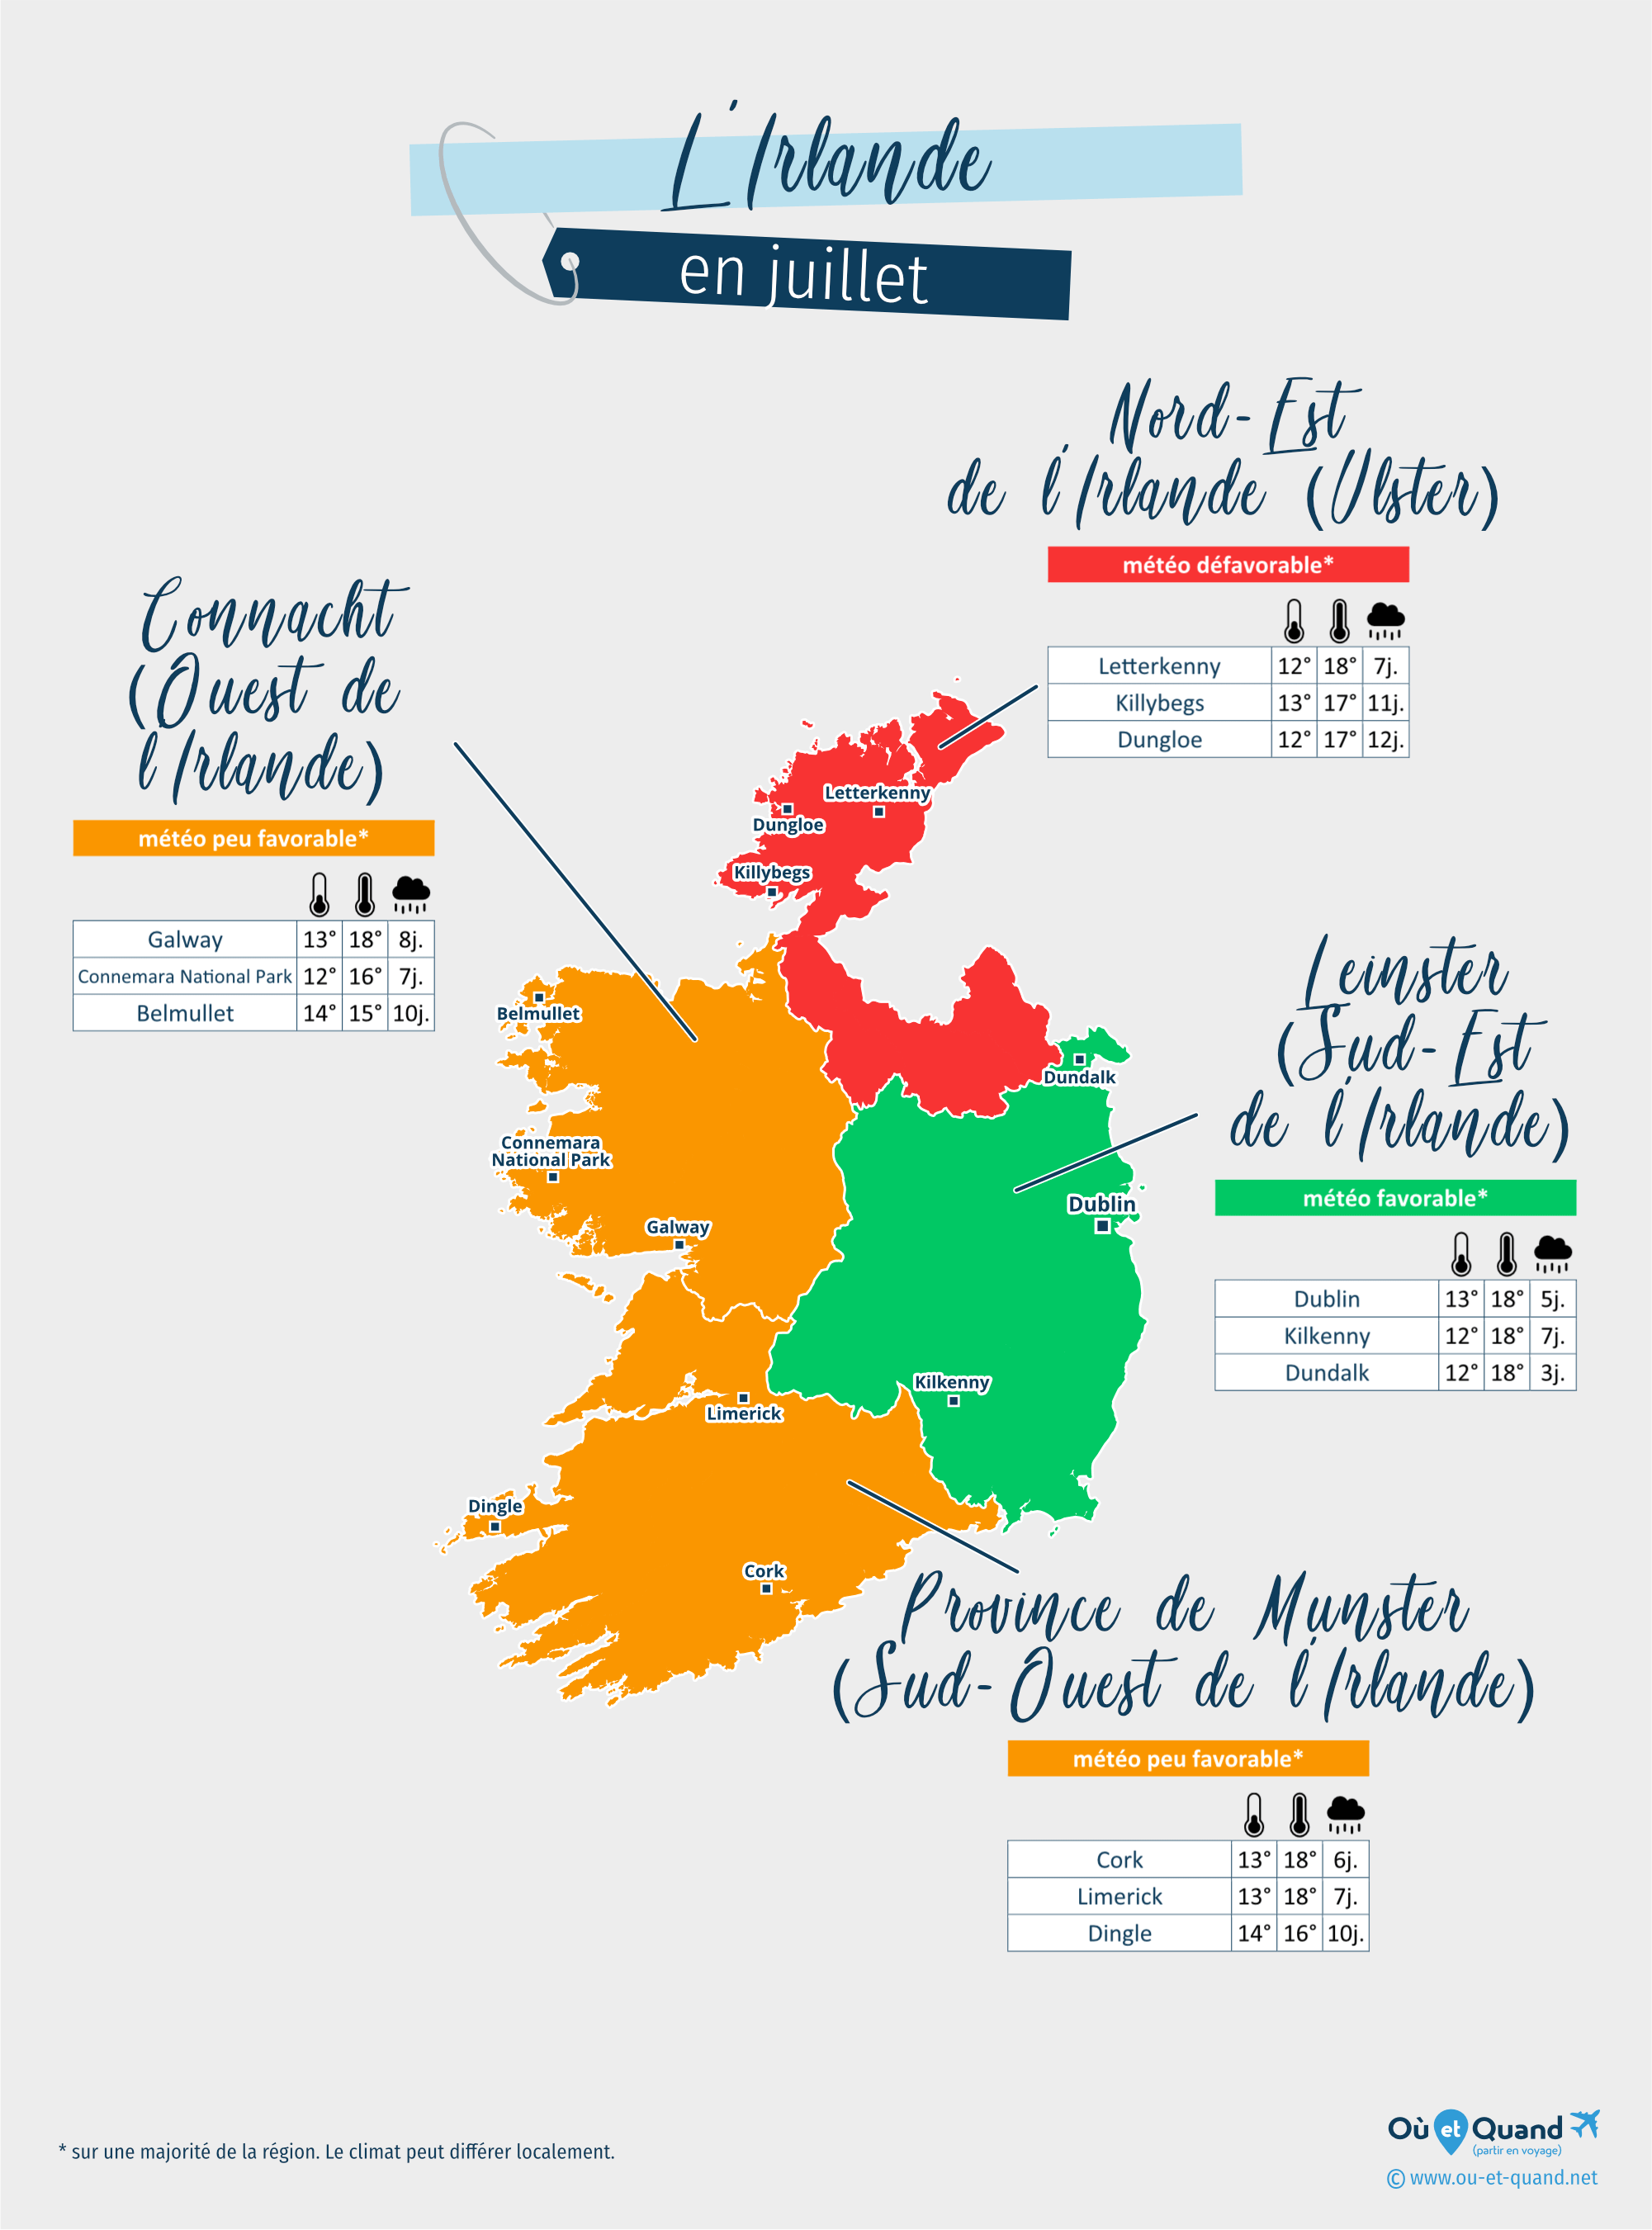 Carte de la météo en juillet dans les régions de l'Irlande